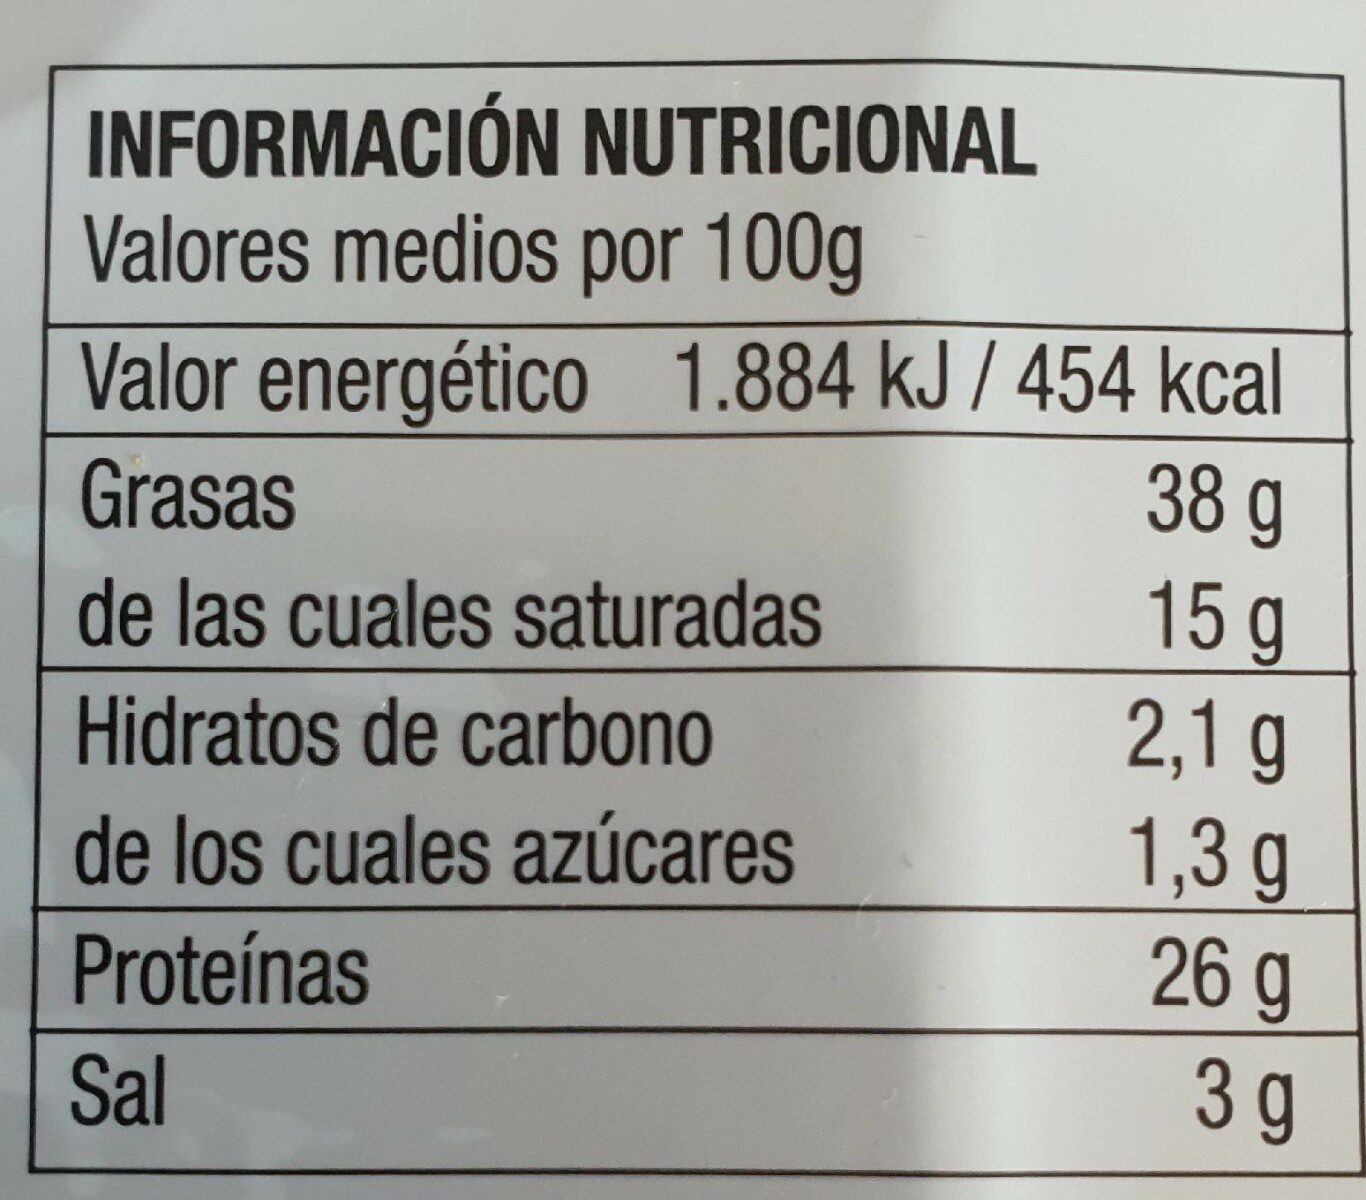 Salchichón ibérico extra finas lonchas - Nutrition facts - es